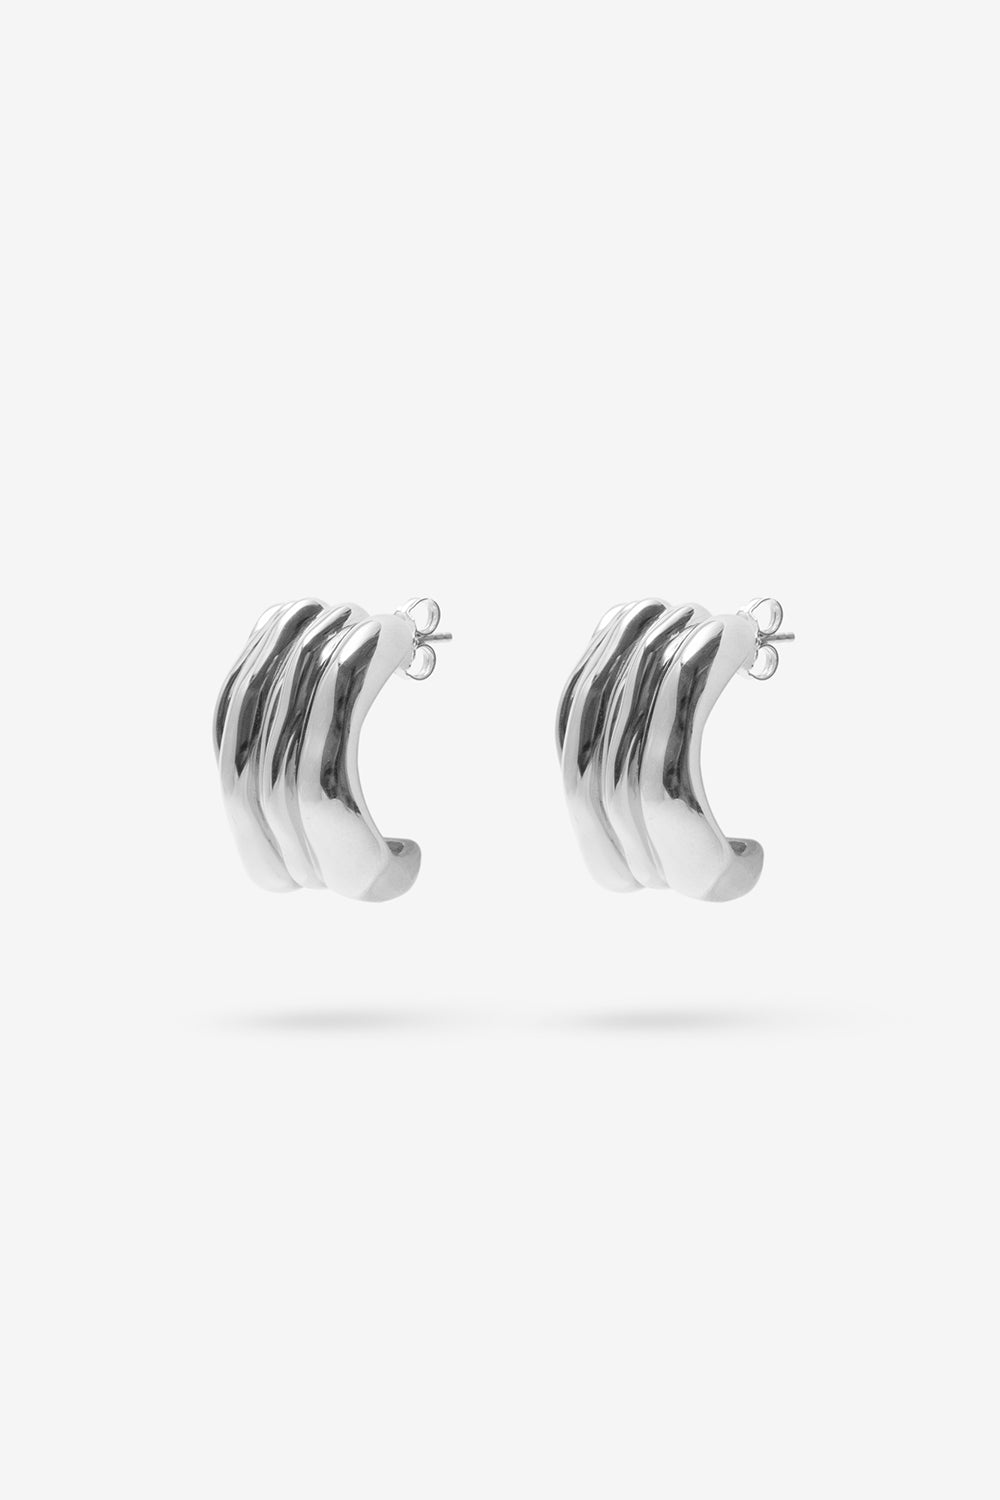 Vertigo Earrings - Sterling Silver